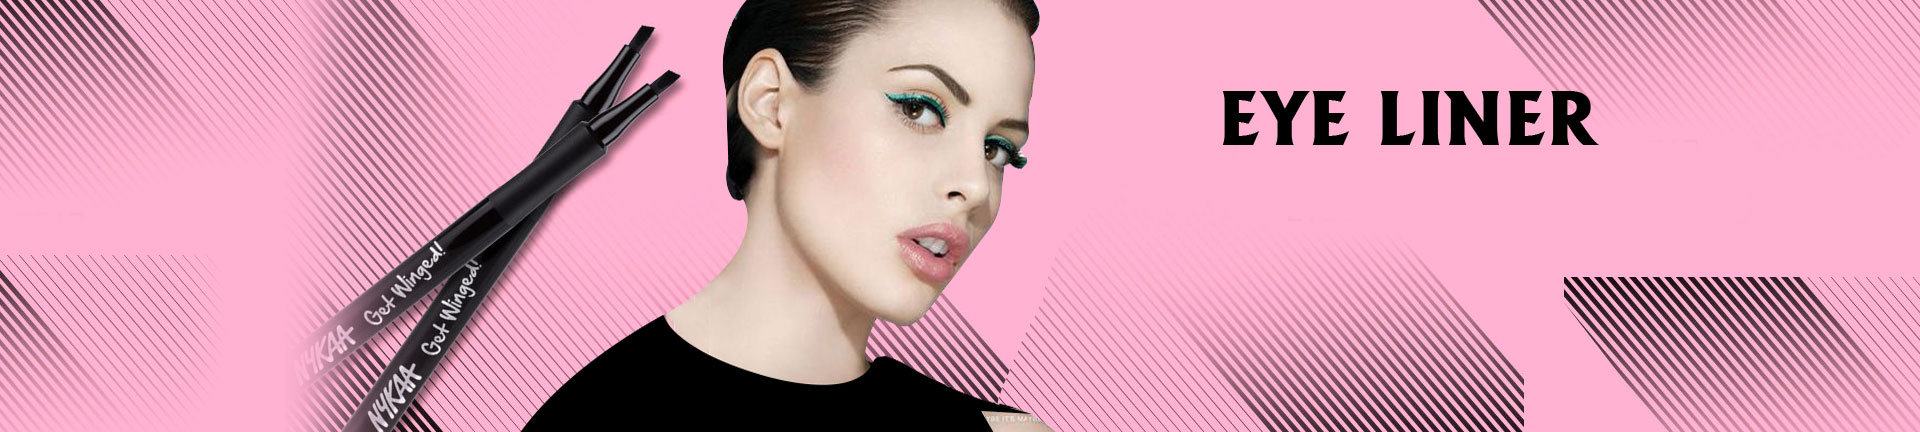 Buy Eyeliner For Women online @ Best Price in Pakistan